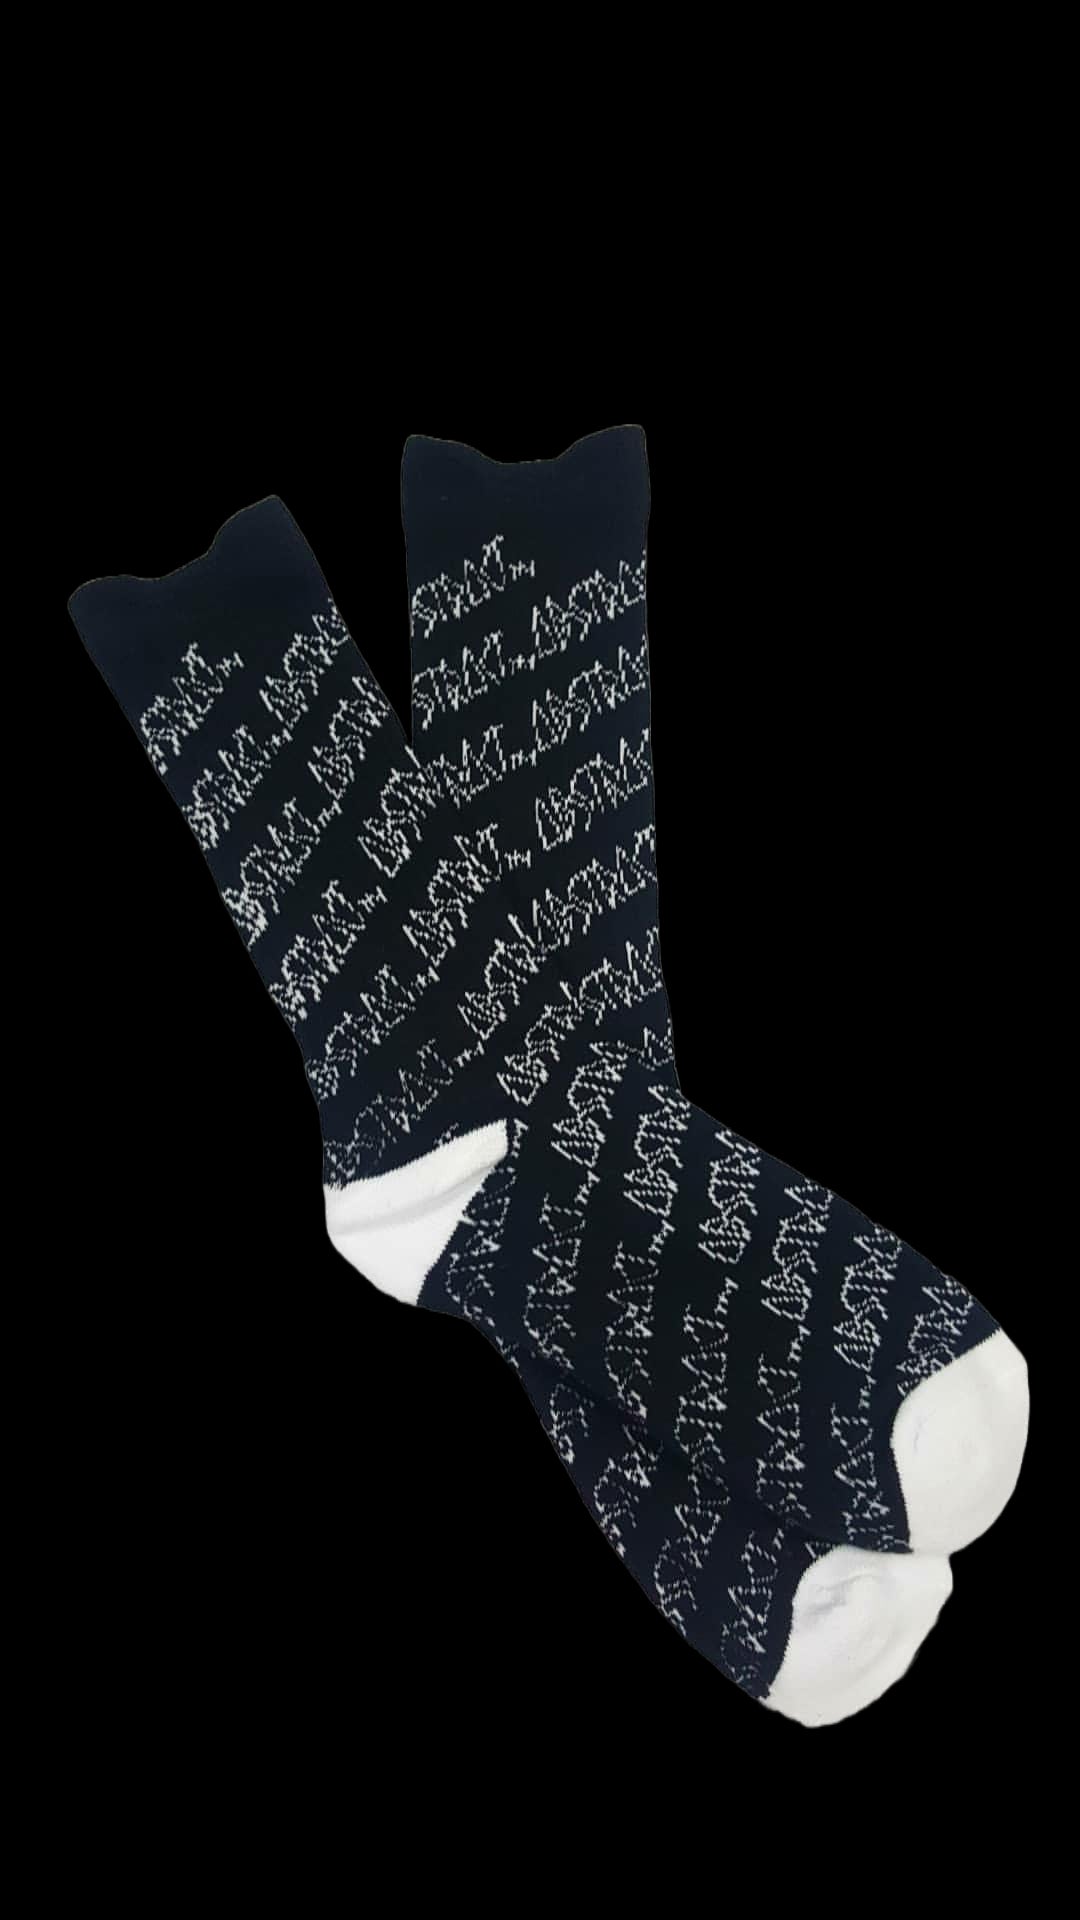 Overkill Sock Socks Black/White / One Size / Cotton Black